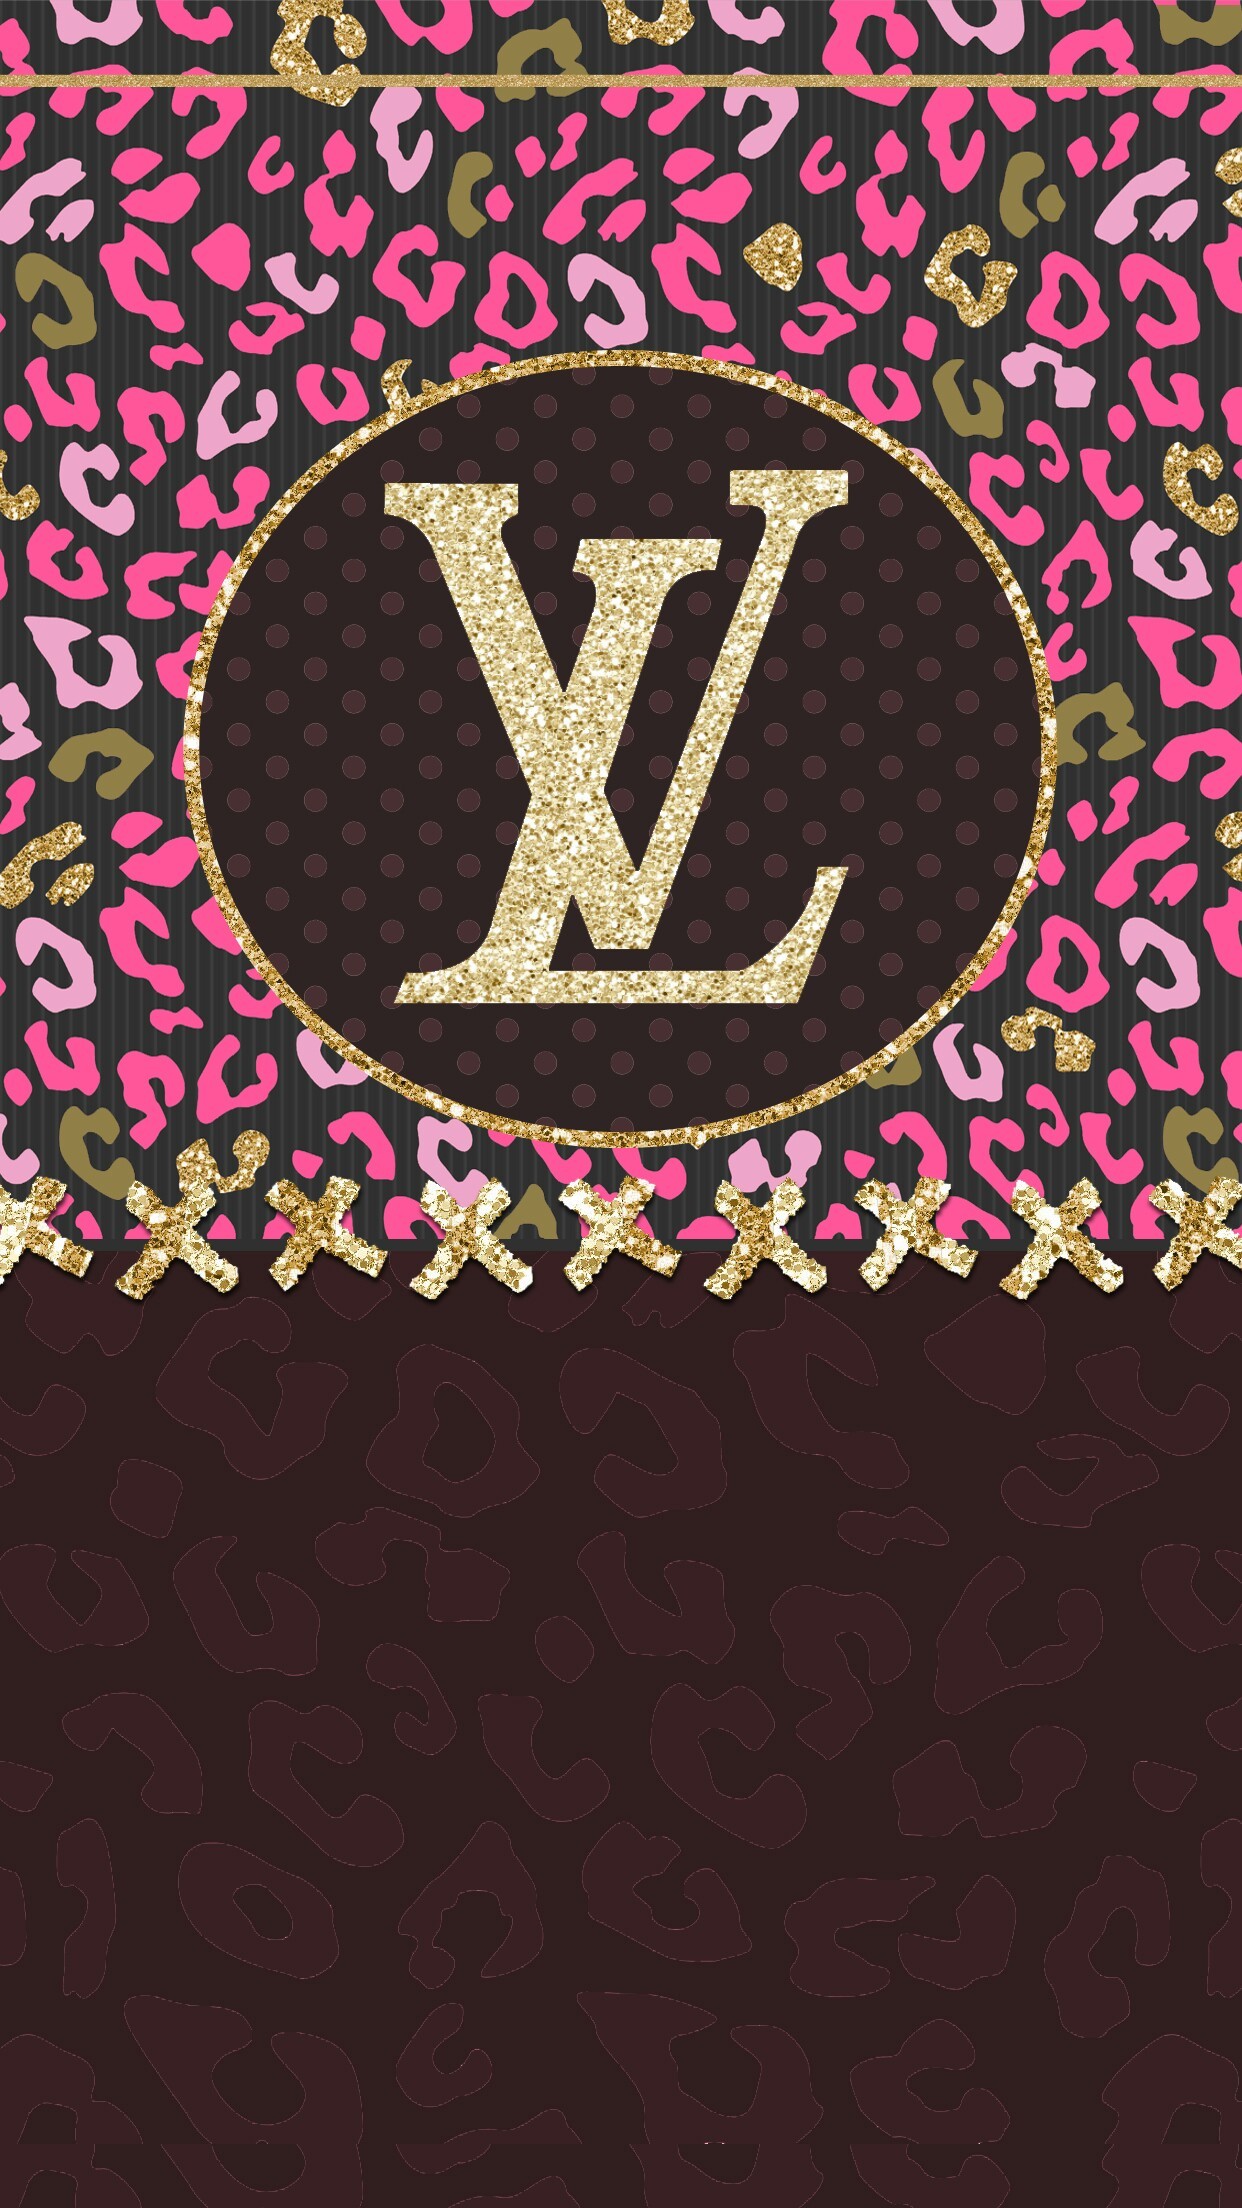 Louis Vuitton , HD Wallpaper & Backgrounds